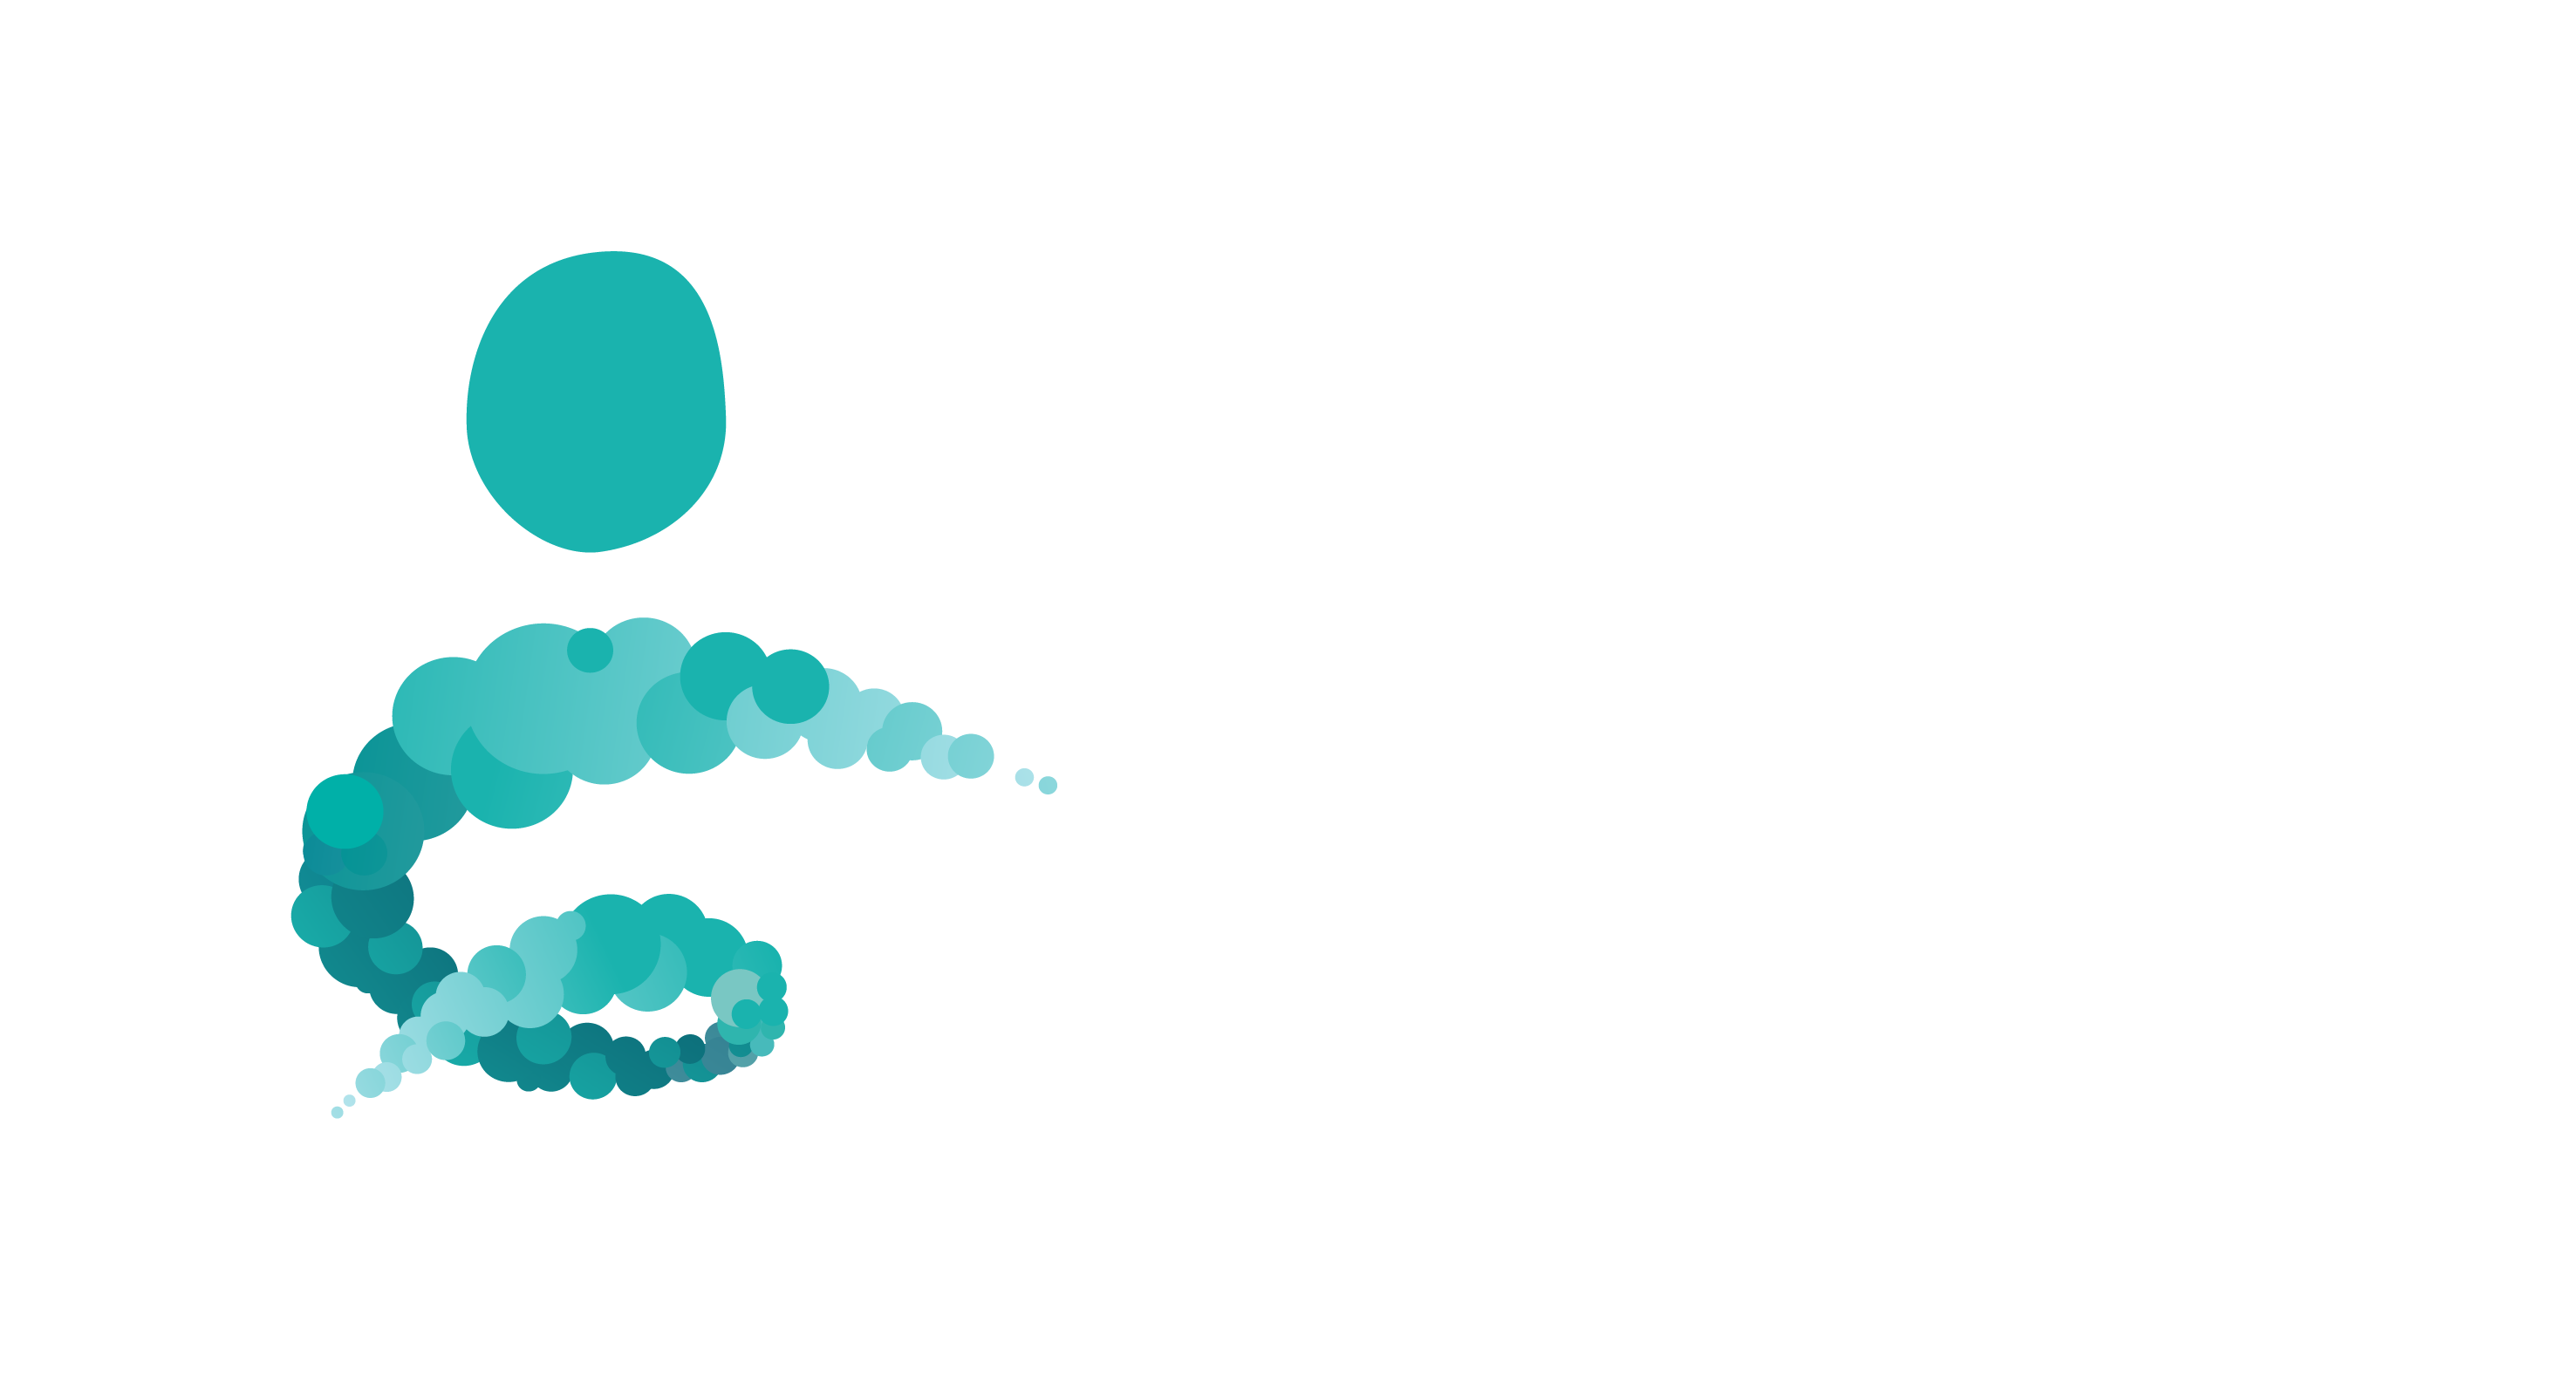 Zoloz yoga – balans i kroppen och i livet